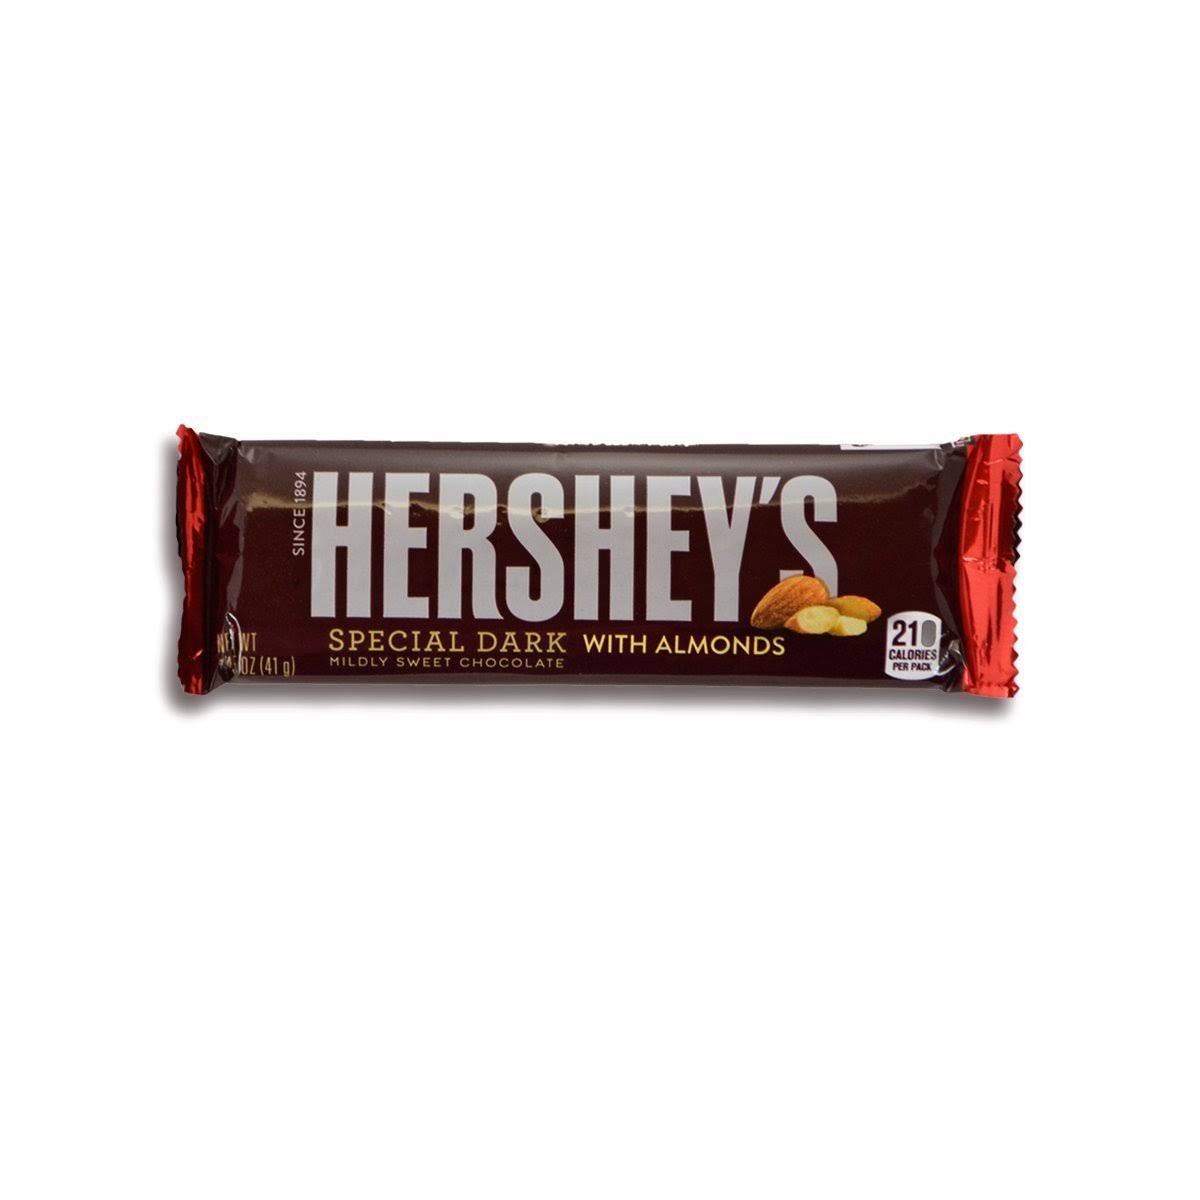 Hershey's Chocolate Bar - Special Dark with Almonds, 1.45oz